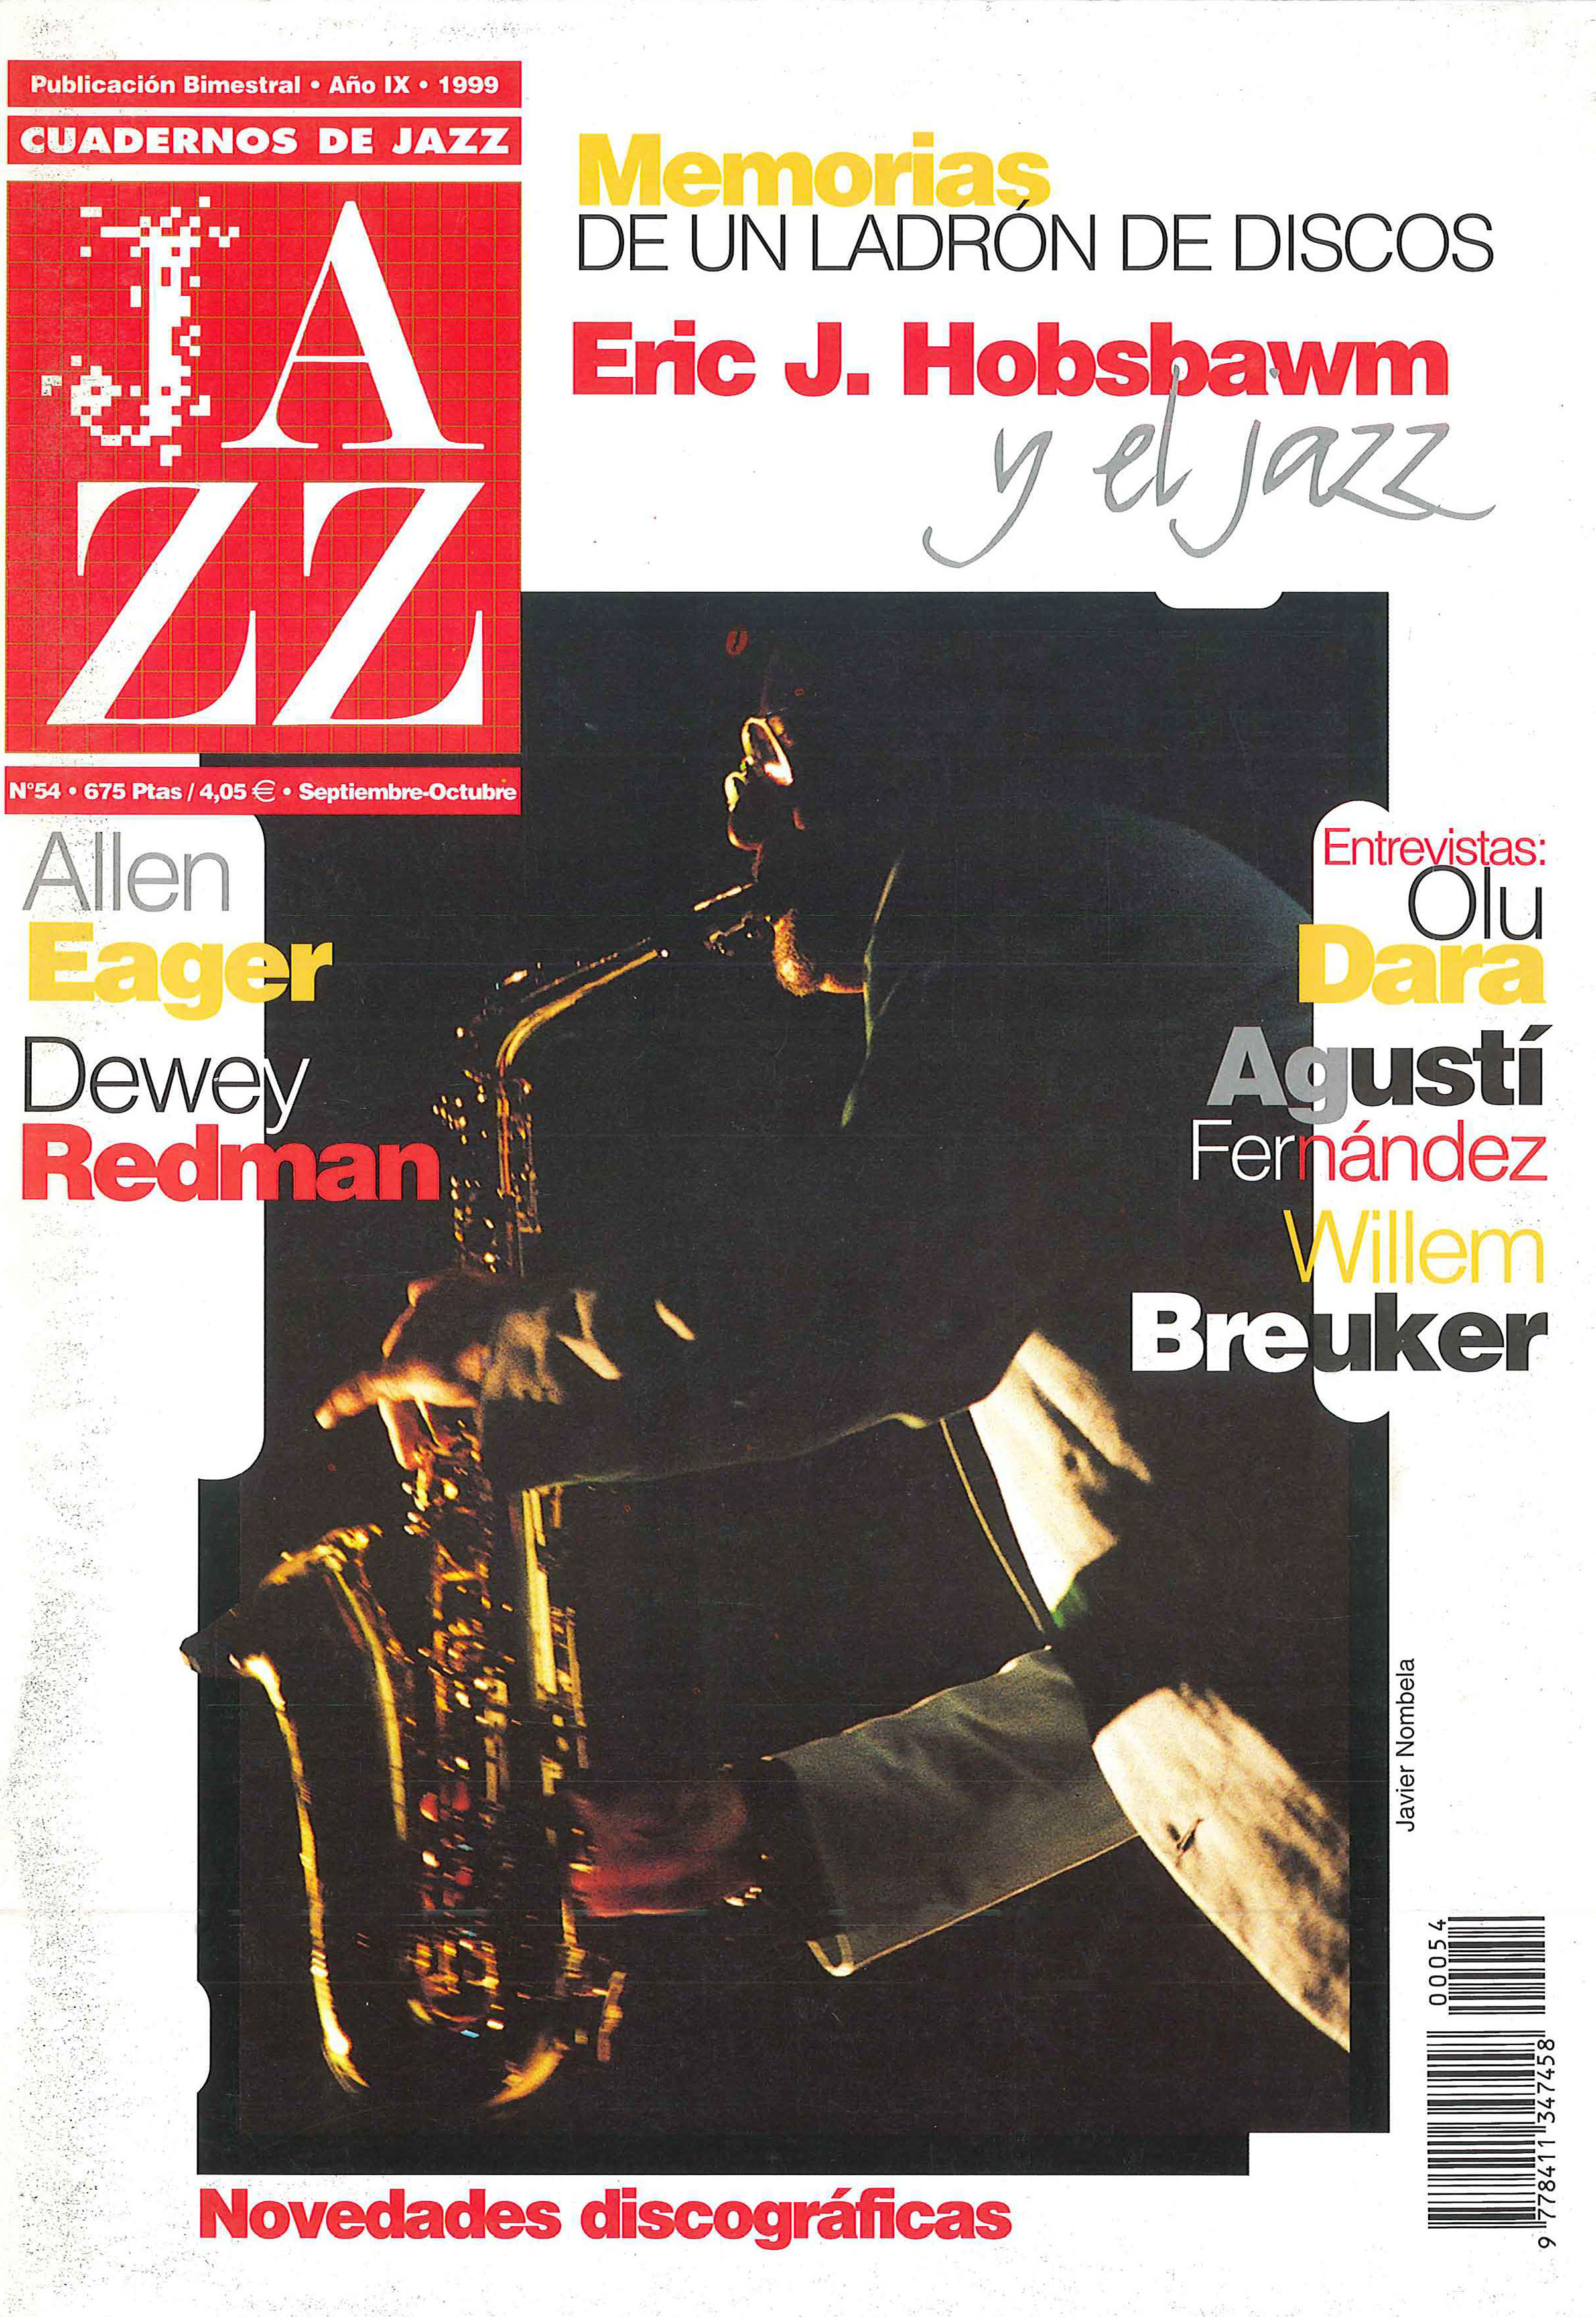 Cubierta del número 54 de la revista Cuadernos de Jazz